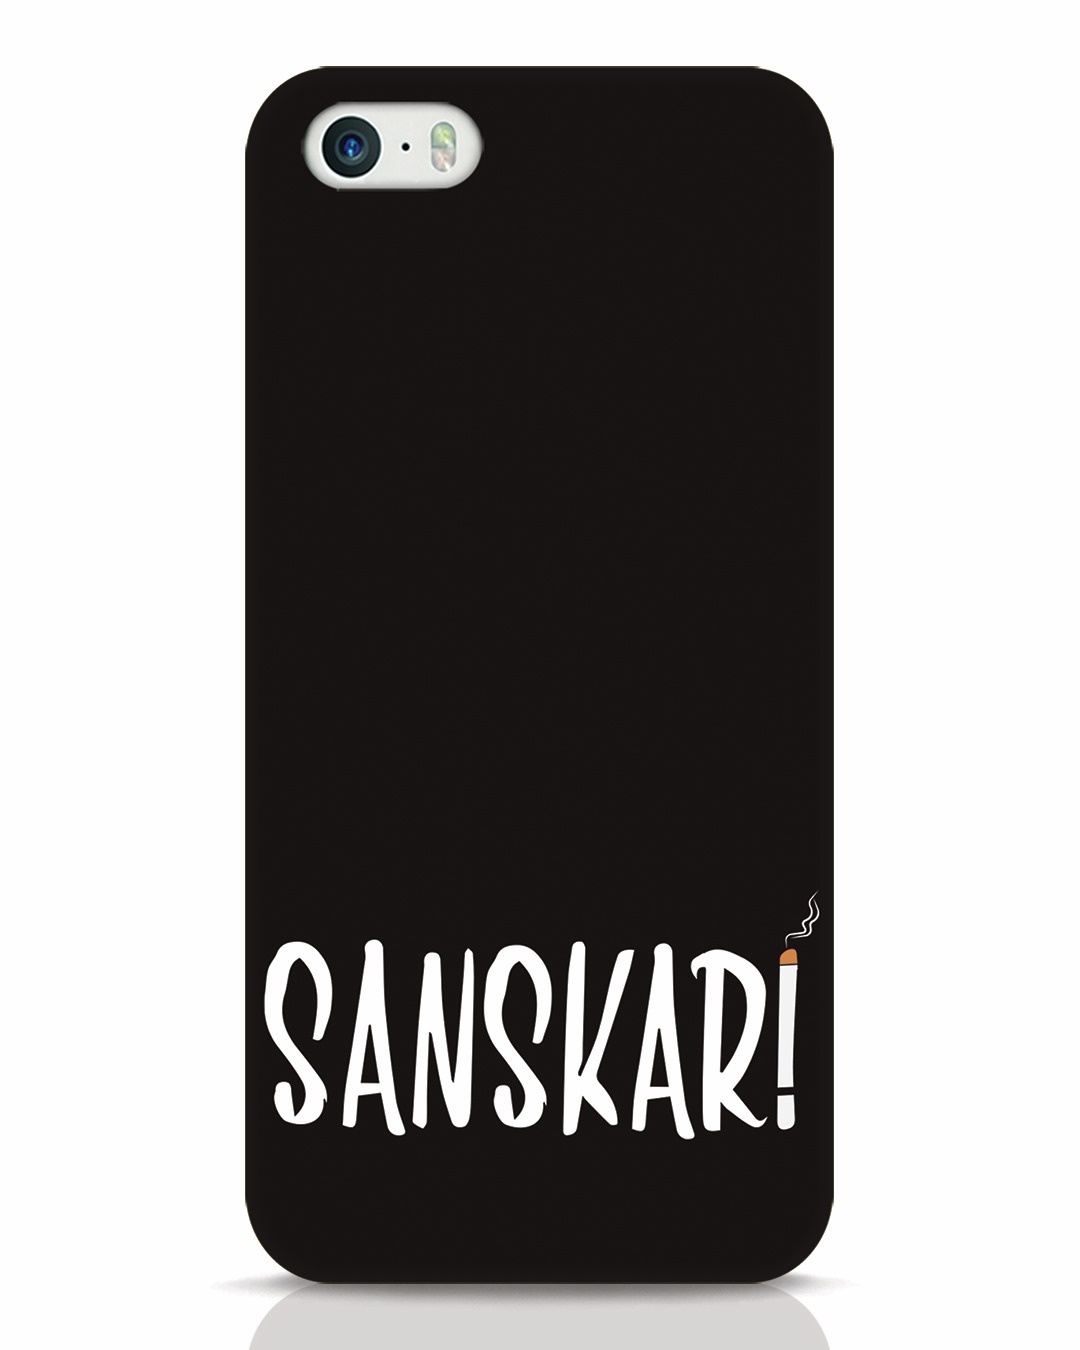 Sanskari iPhone 5s Mobile Cover iphone 5s Mobile Covers Bewakoof.com